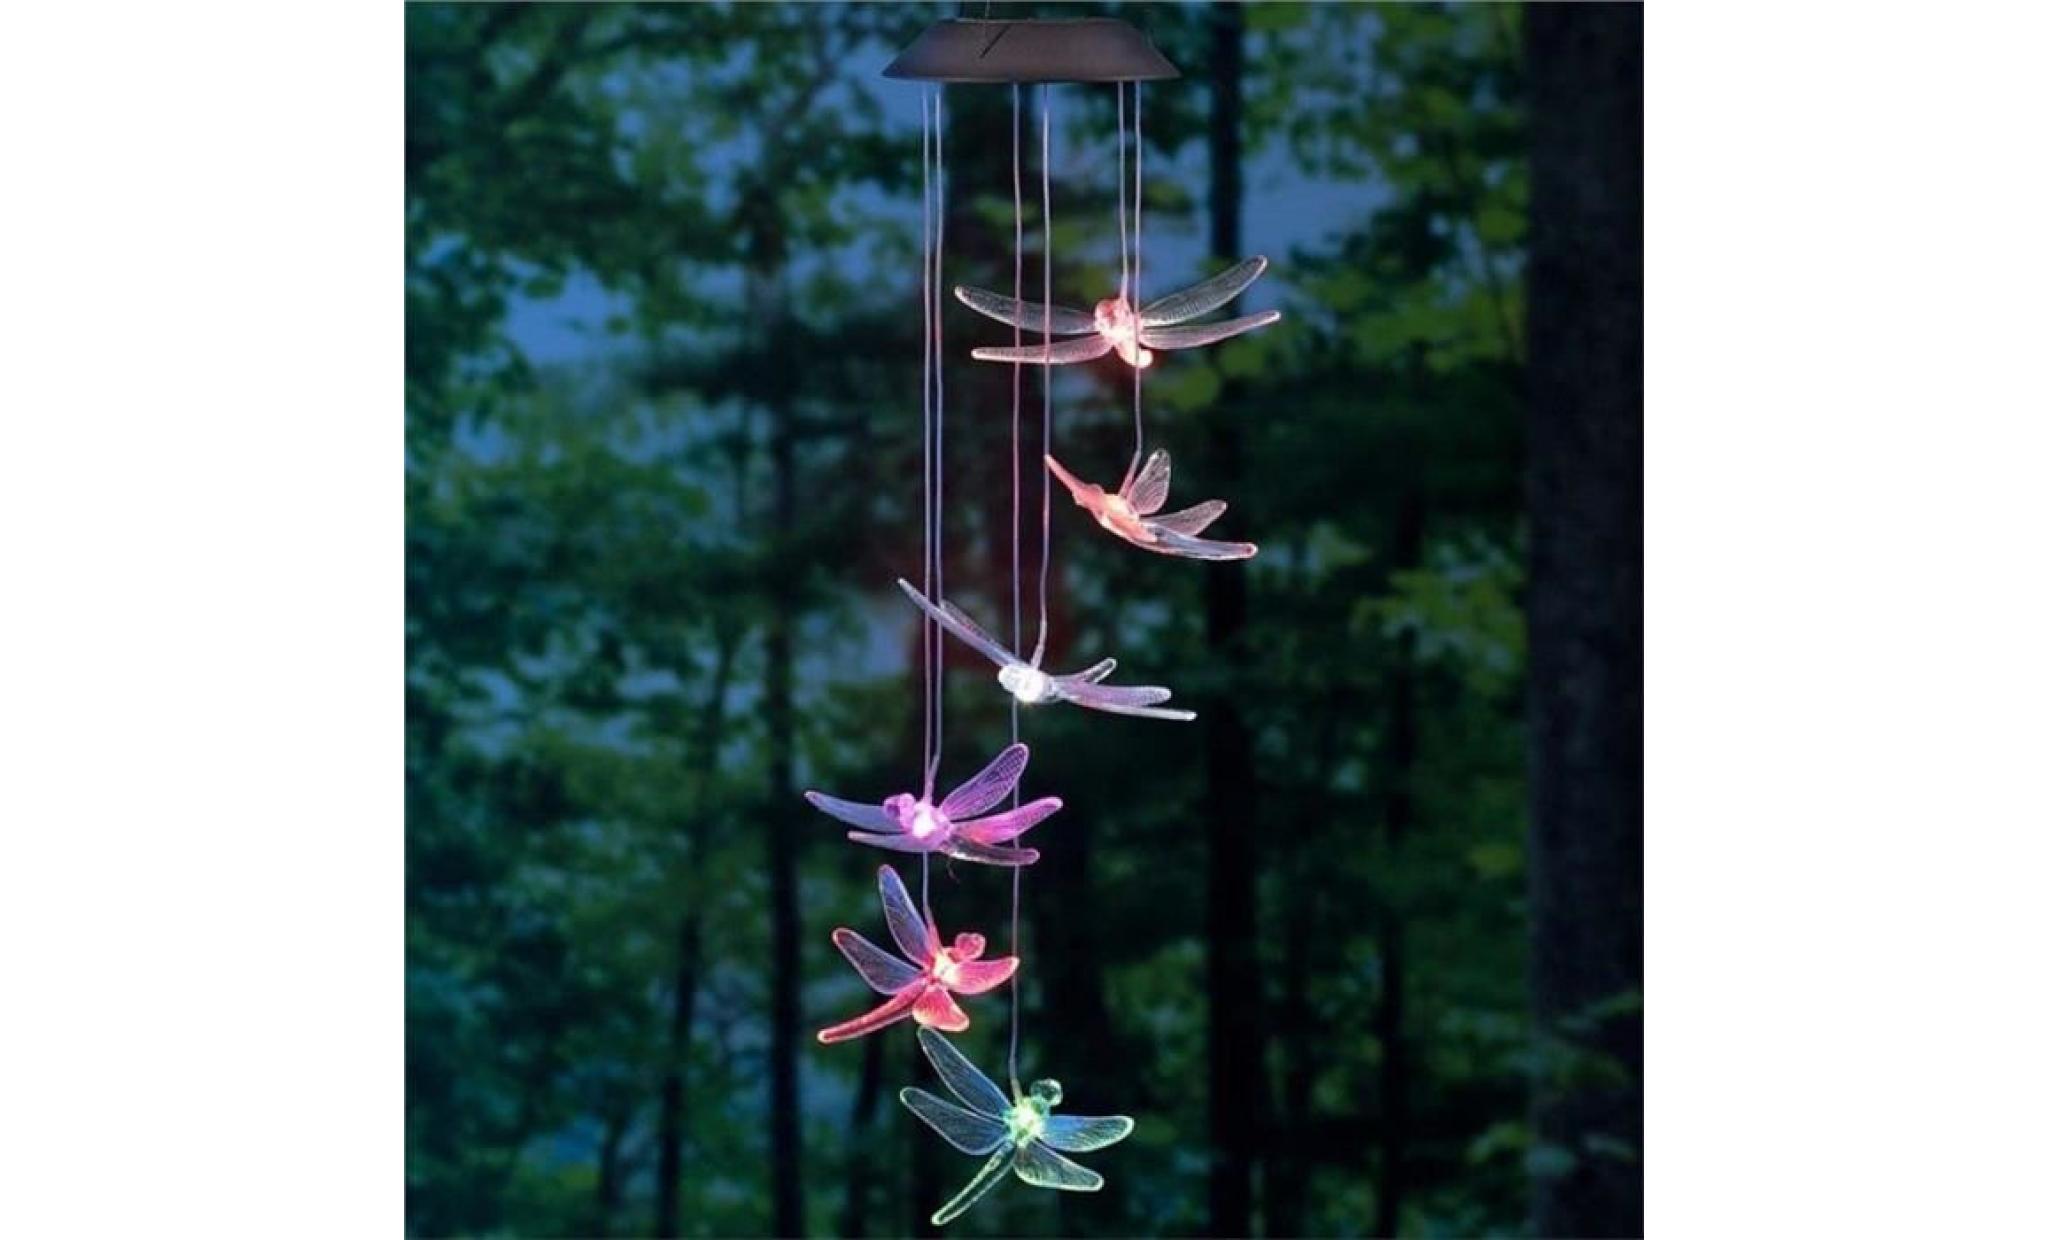 solaire mobile led lumière couleur changement de carillons À vent libellule pendentif aeolian bell cour jardin (couleur aléatoire)